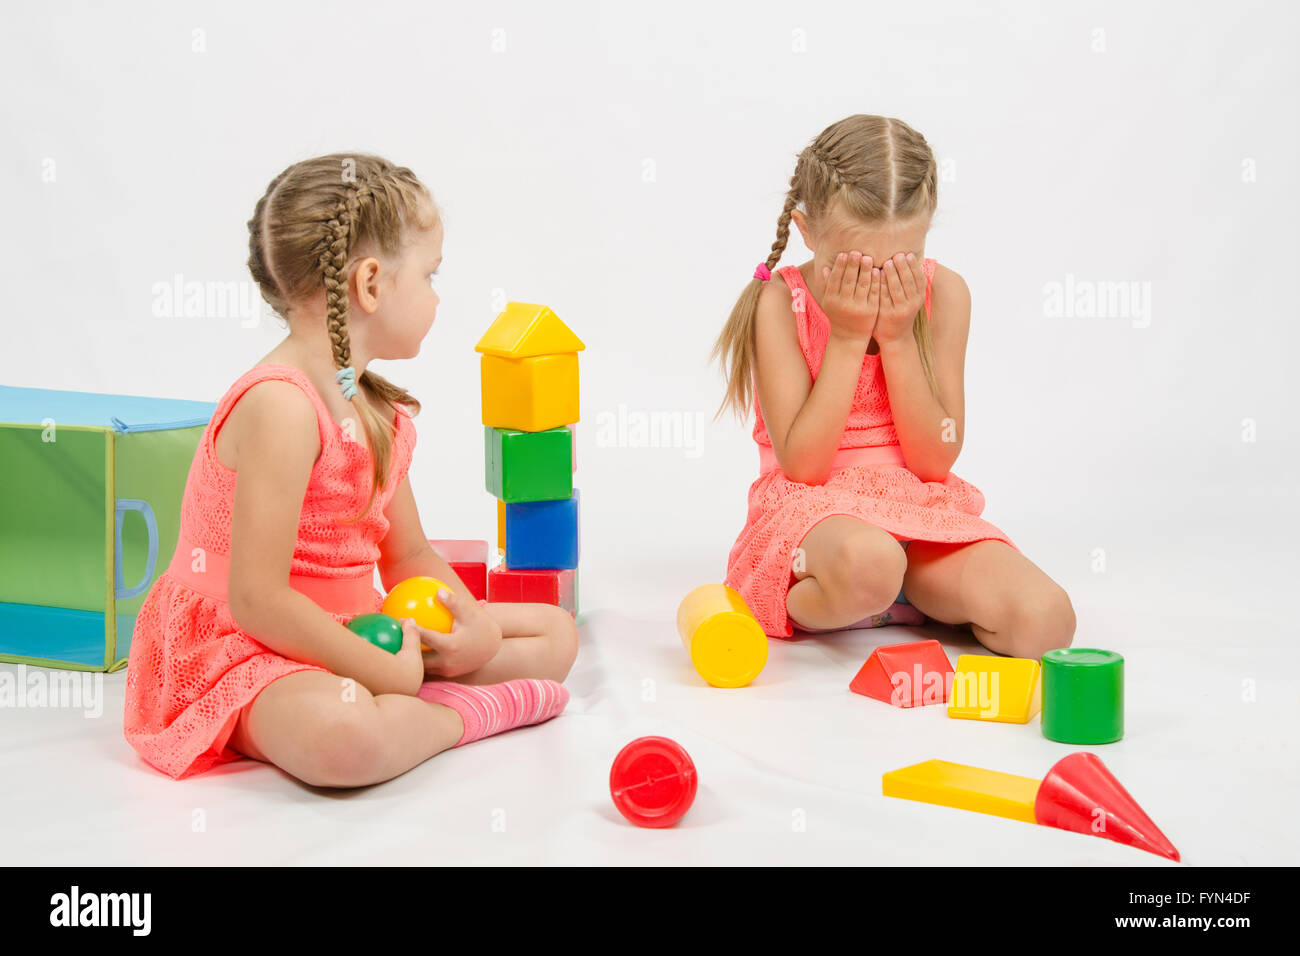 Mädchen verletzt ein anderes Mädchen spielen mit Spielzeug Stockfoto